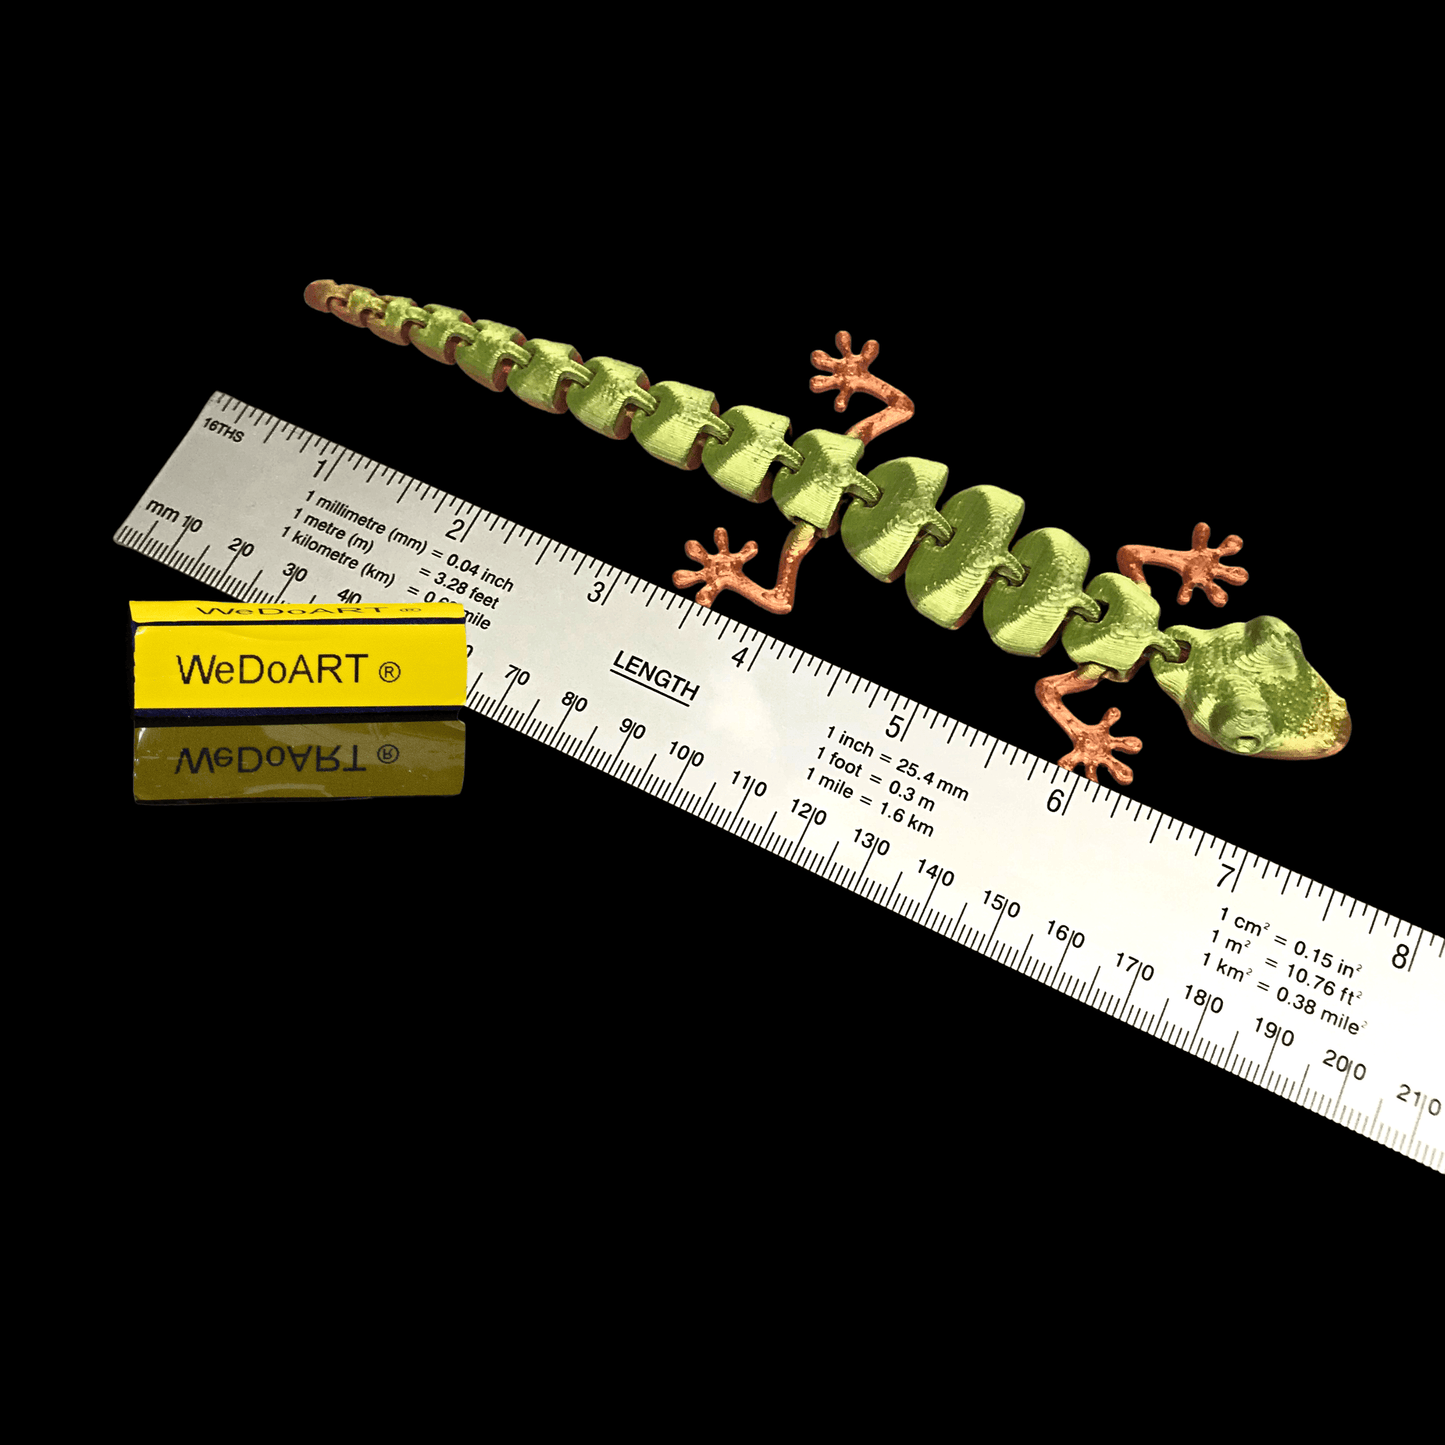 Articulated Lizard 3d print 7" - 18 cm long! - WEDOART-IL